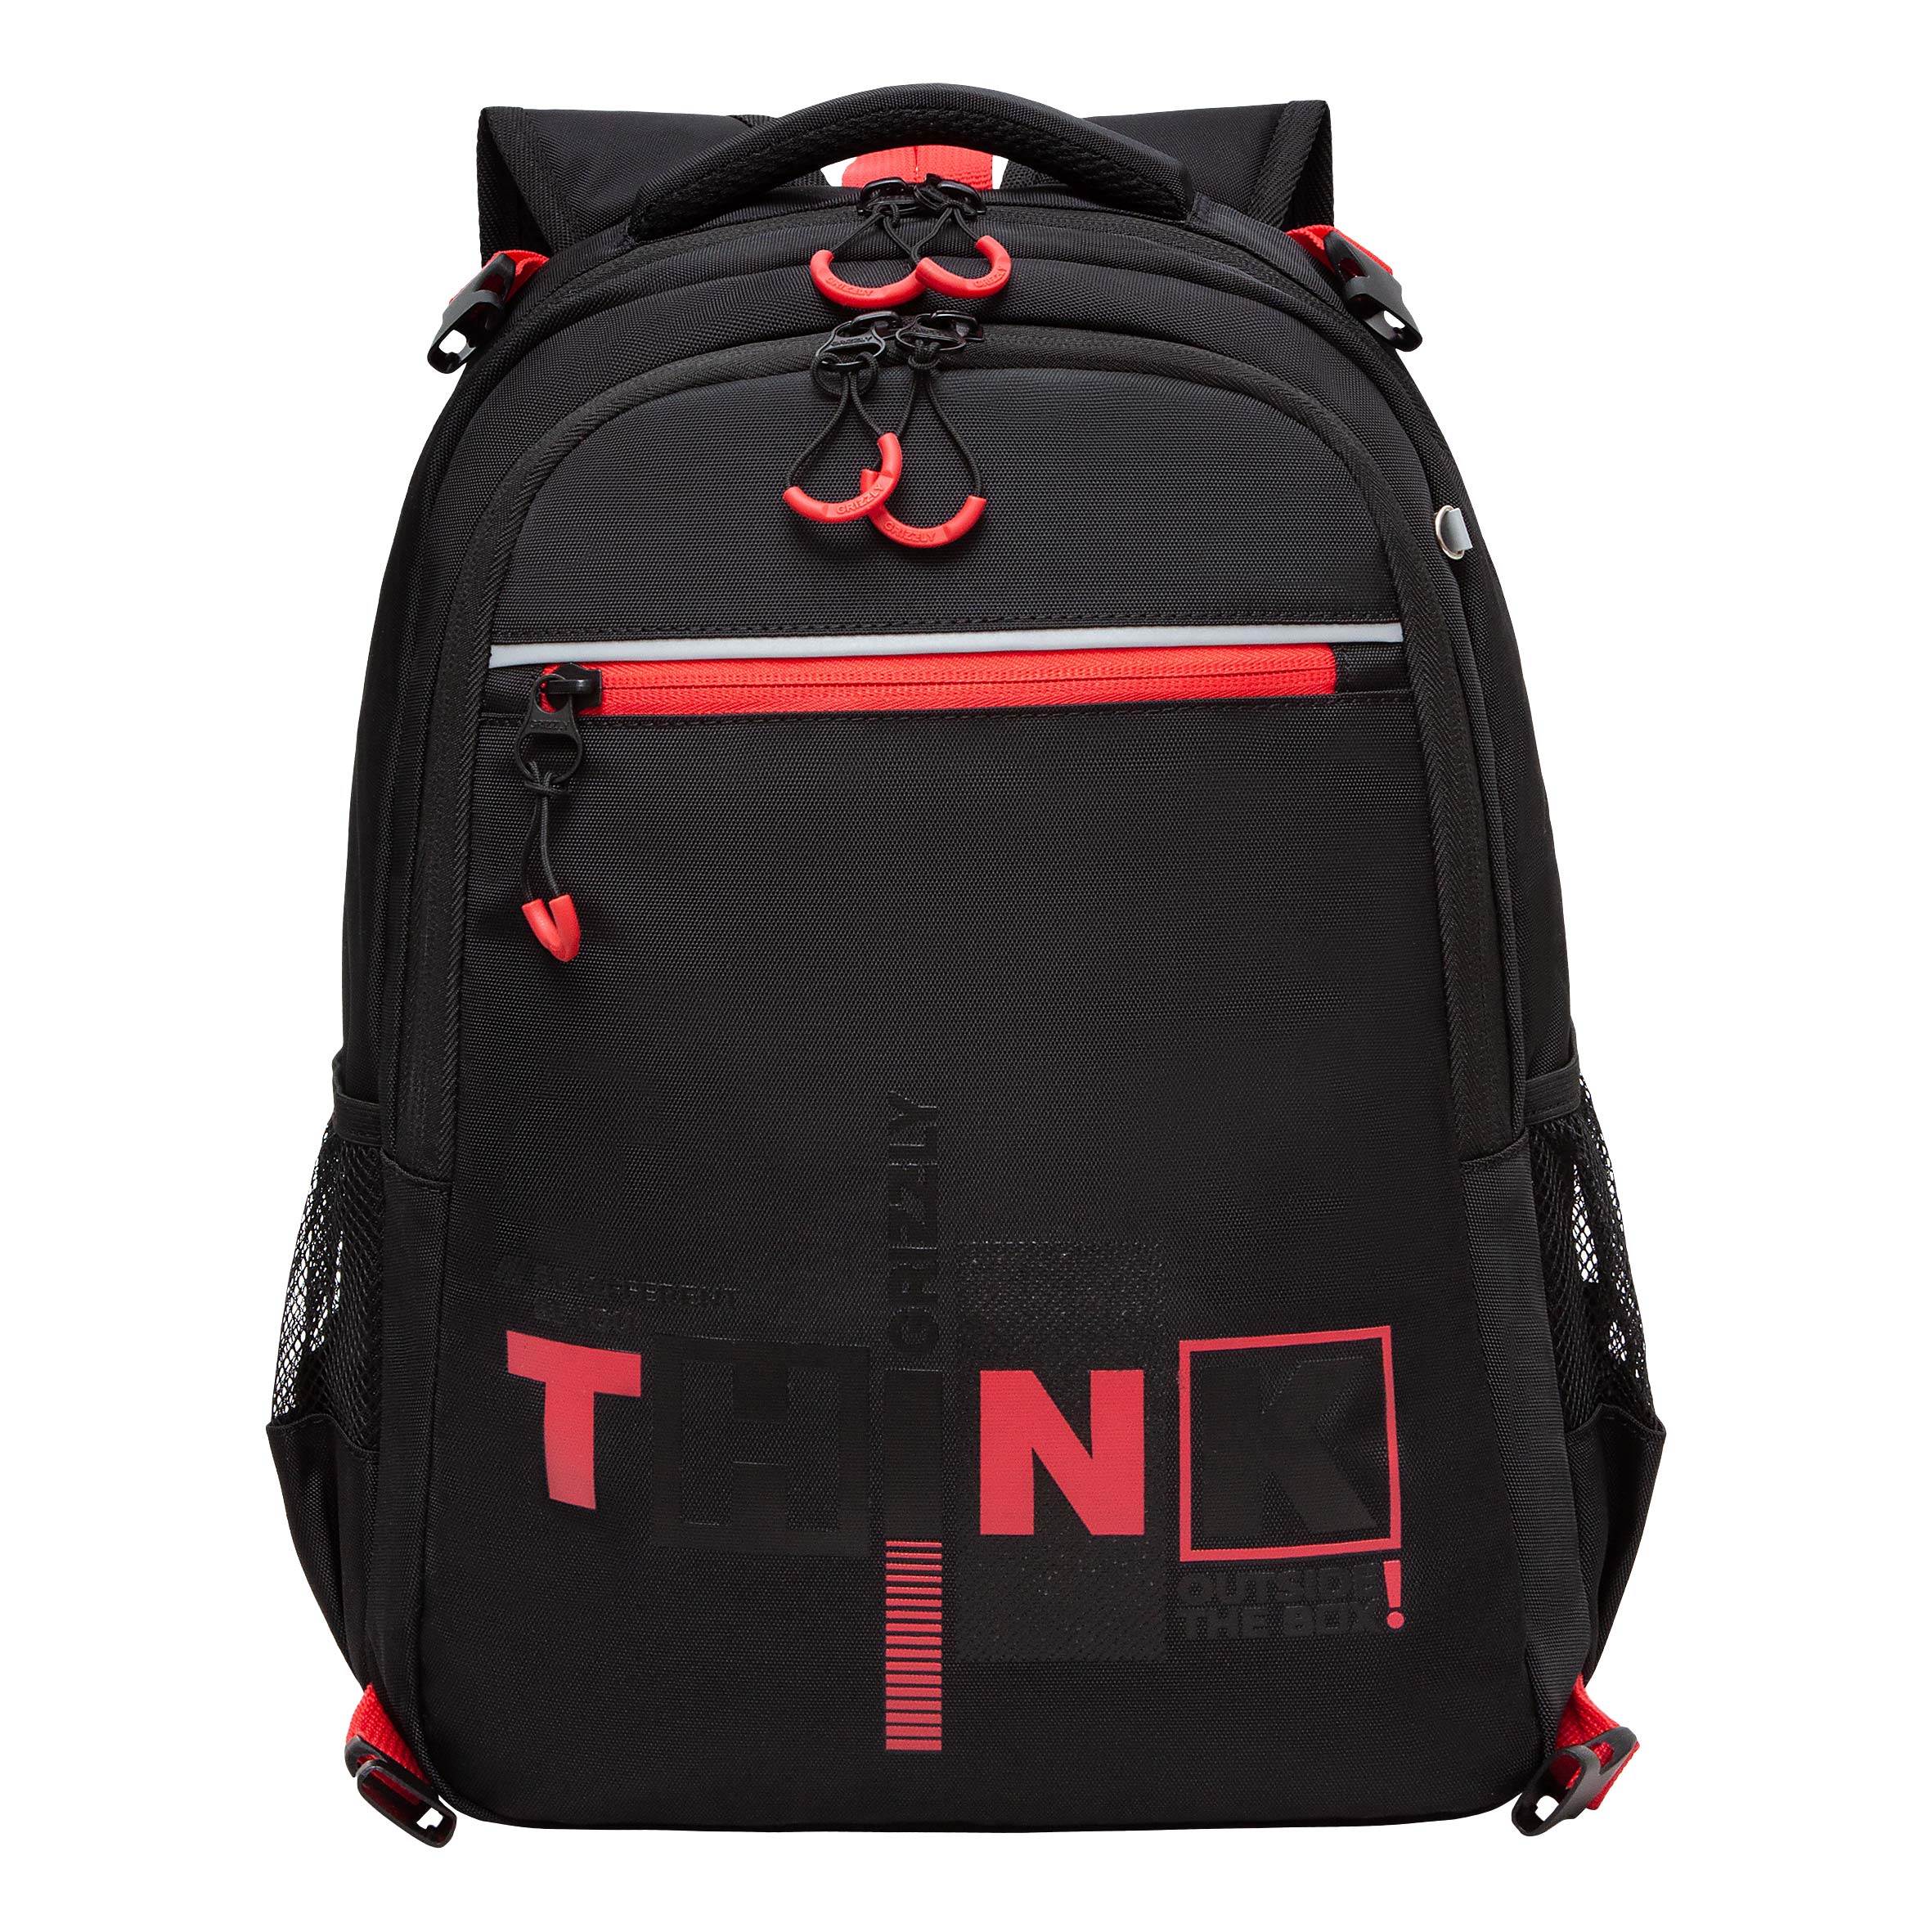 Рюкзак школьный GRIZZLY в комплекте с мешком для обуви или формы, для мальчика, RB-458-1/2 городской школьный рюкзак с помпоном для учащихся черно белый